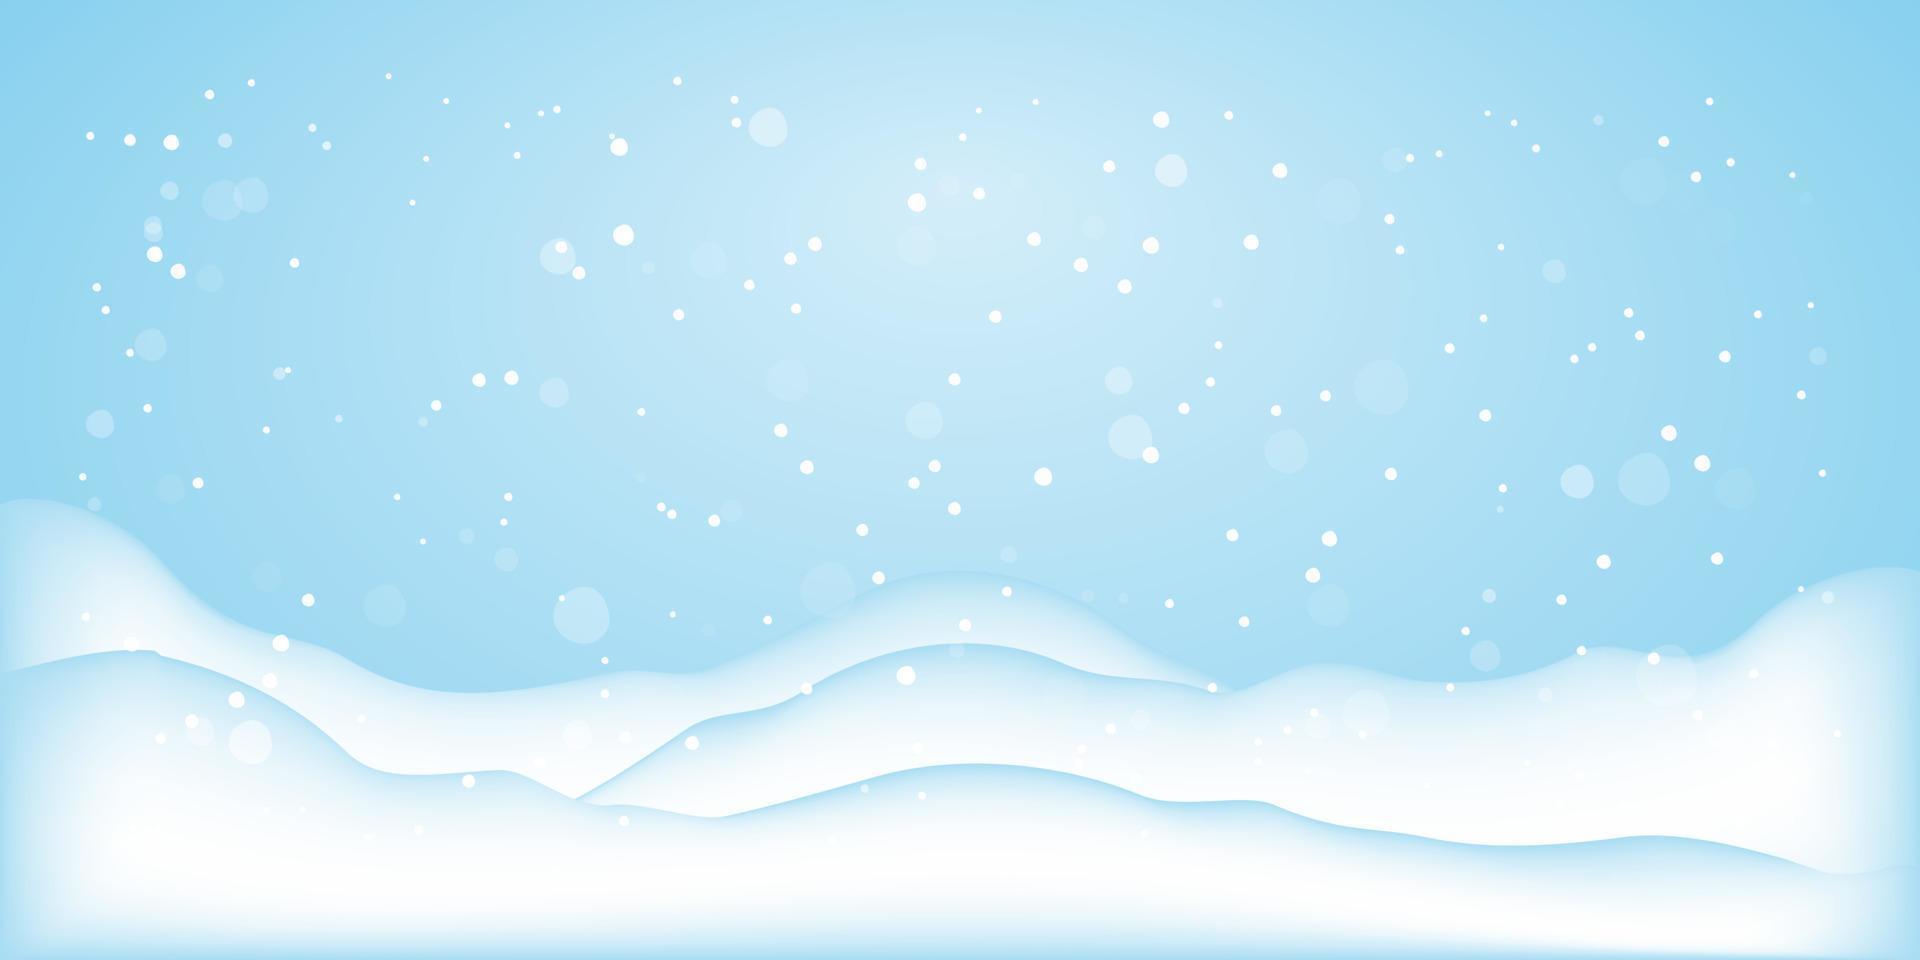 fond d'hiver bleu. paysage d'hiver avec espace de copie, scène de neige pour la saison froide. modèle vectoriel pour une bonne année ou une bannière, une affiche ou une carte postale de voeux de joyeux noël. illustration vectorielle.